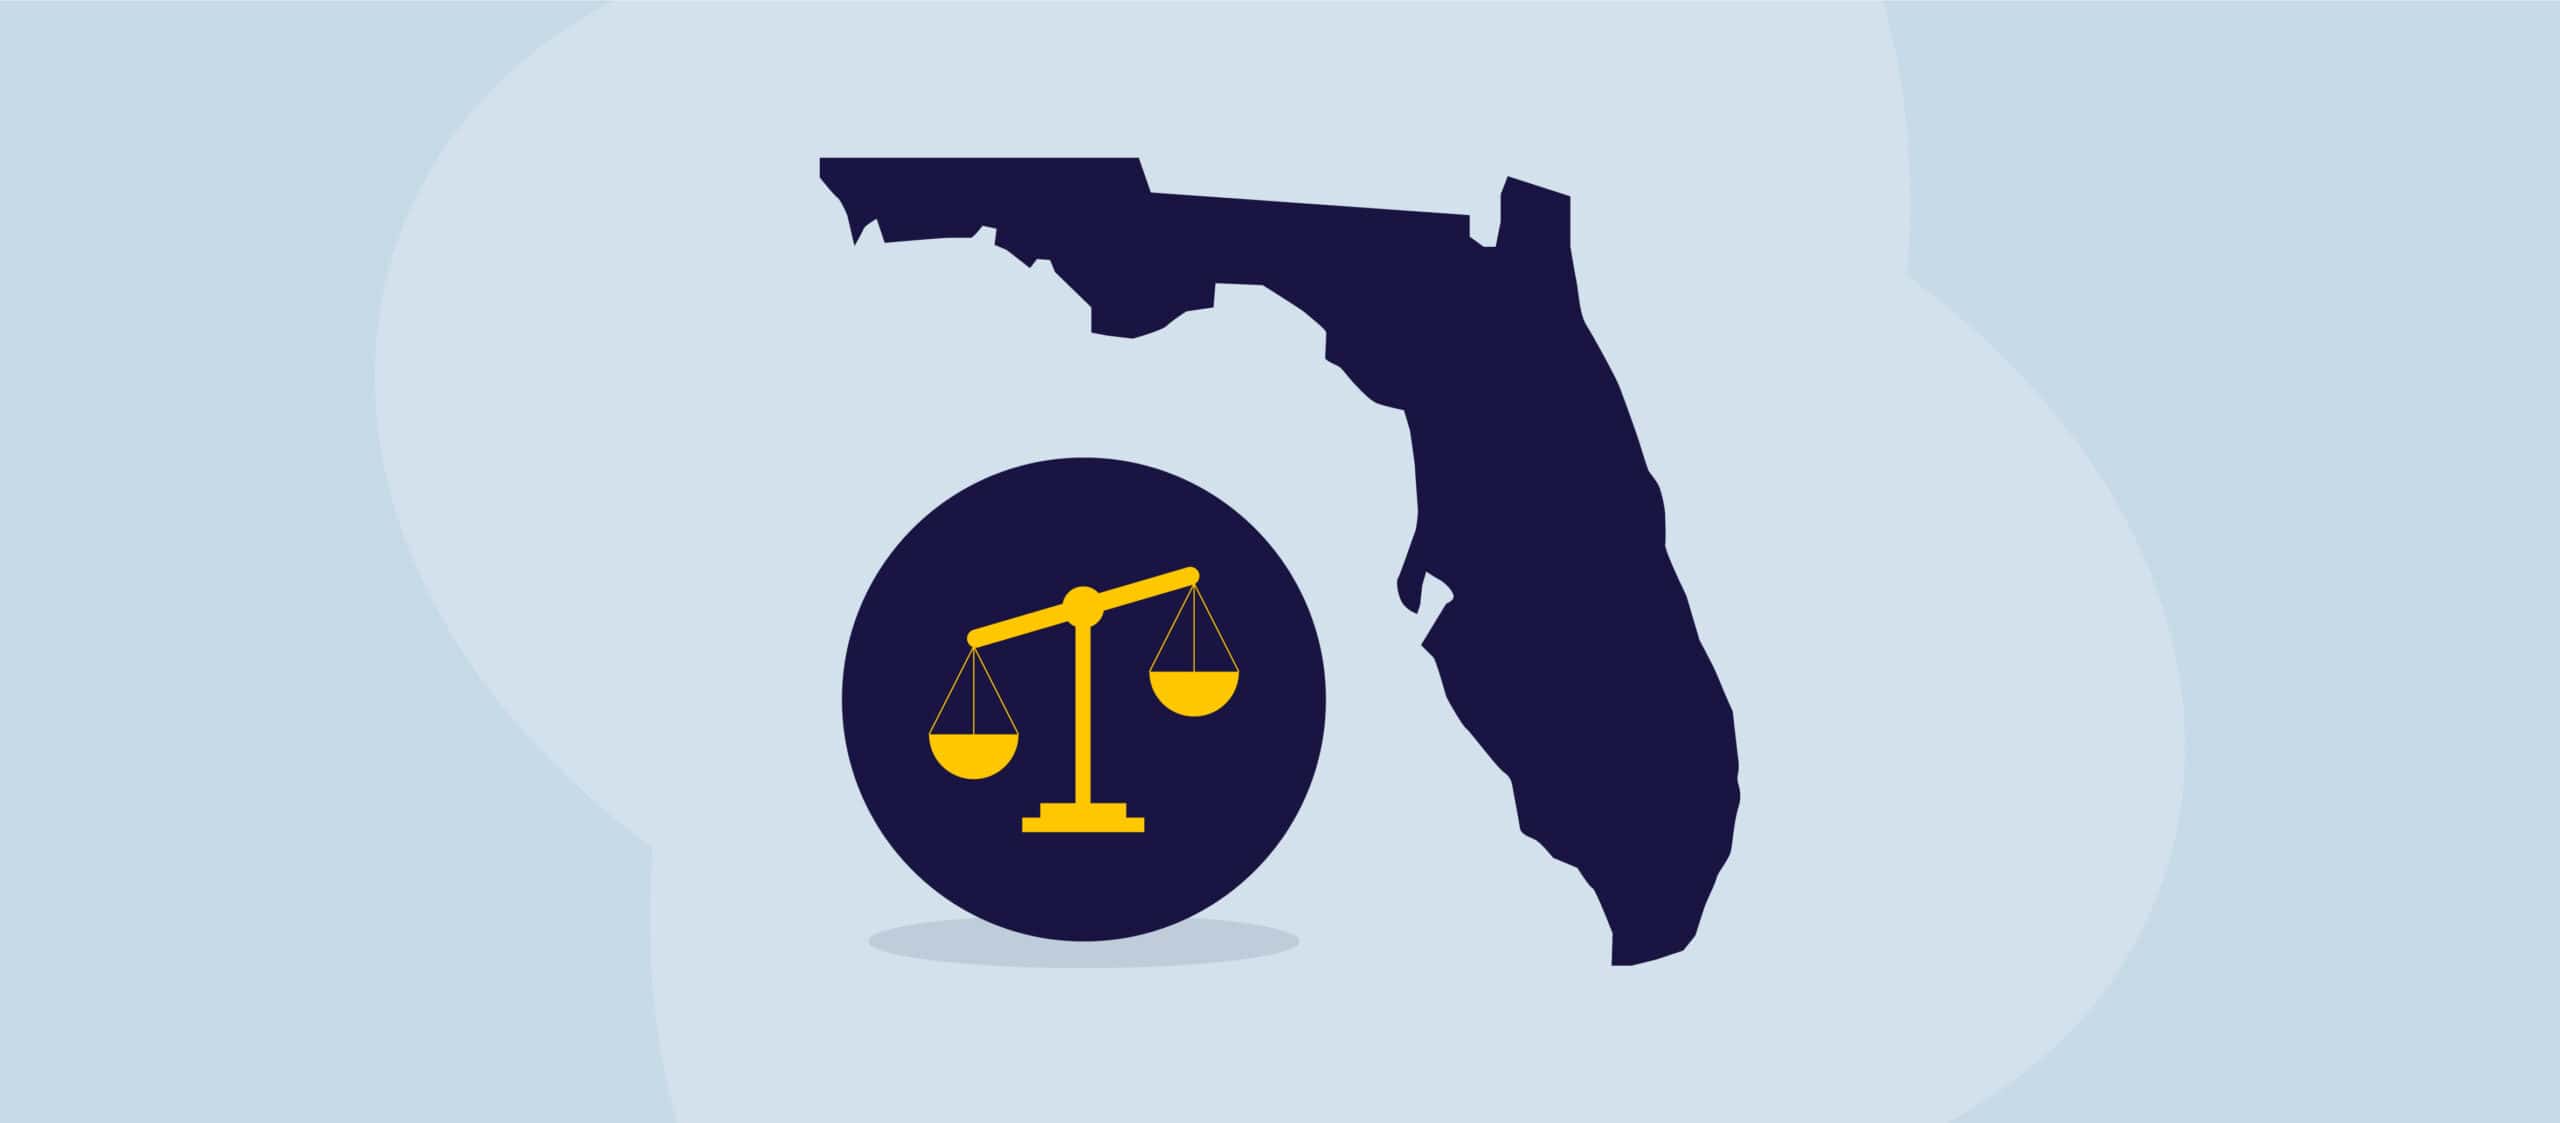 En illustration med retfærdighedens vægtskål og staten Florida.